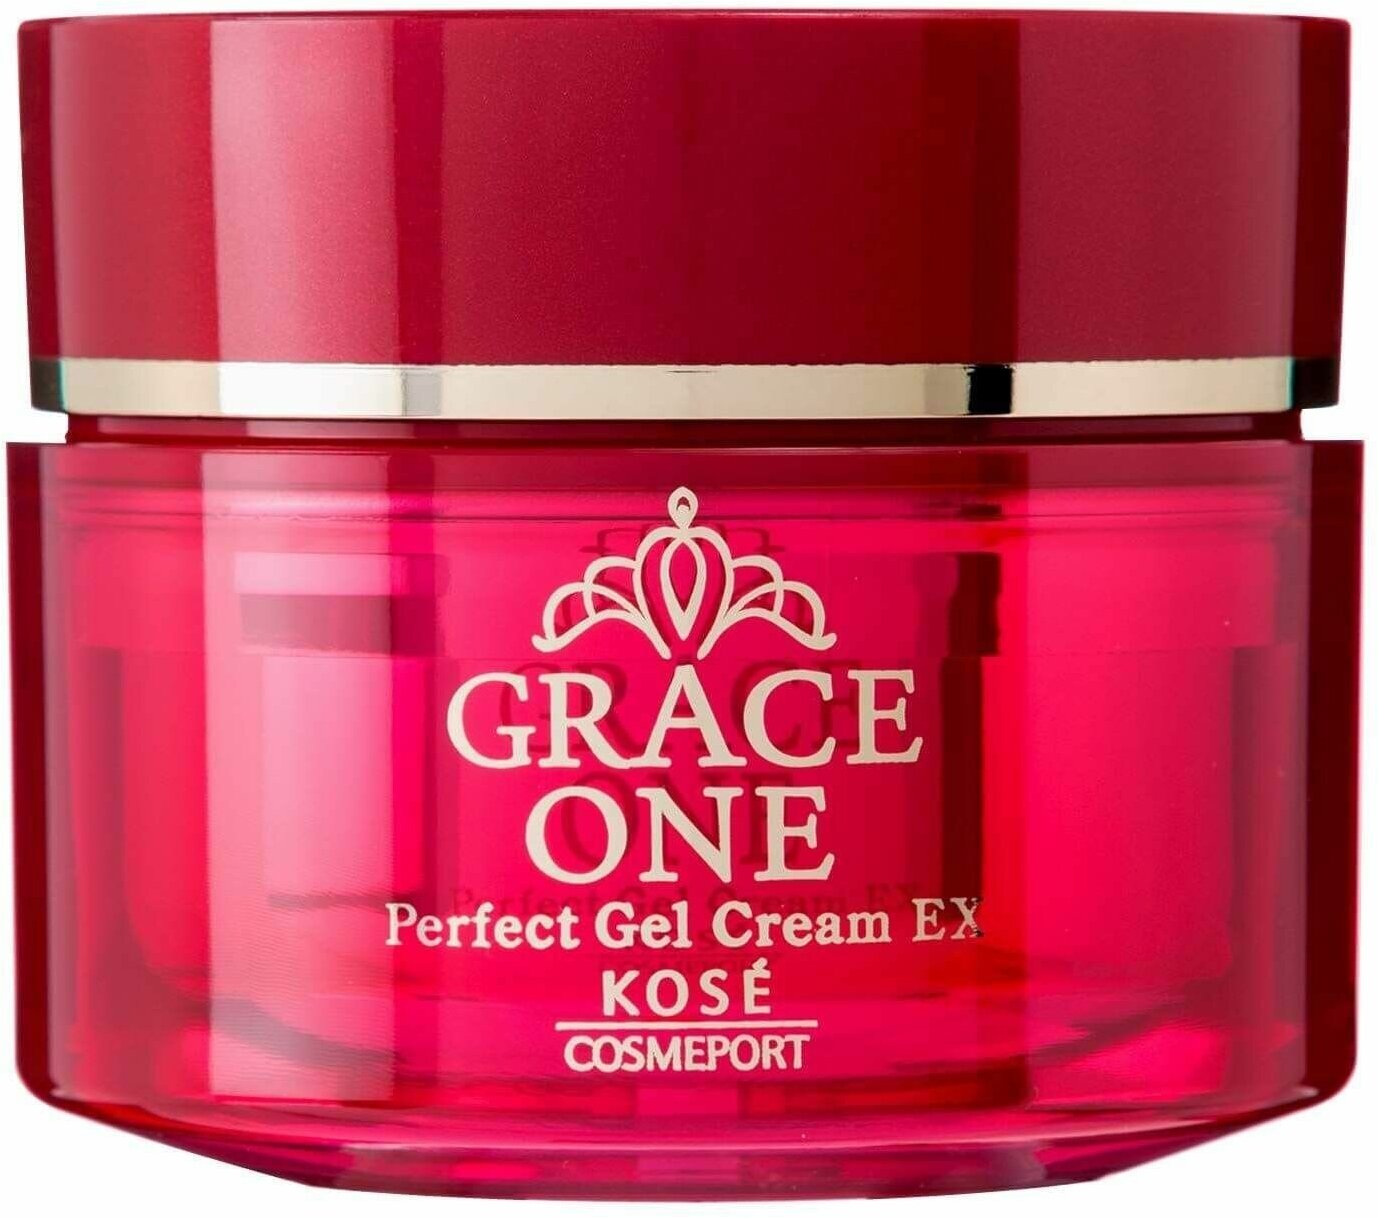 Антивозрастной крем-гель для лица KOSE Grace One Perfect Gel Cream EX, увлажняющий и повышающий упругость кожи, 100г.